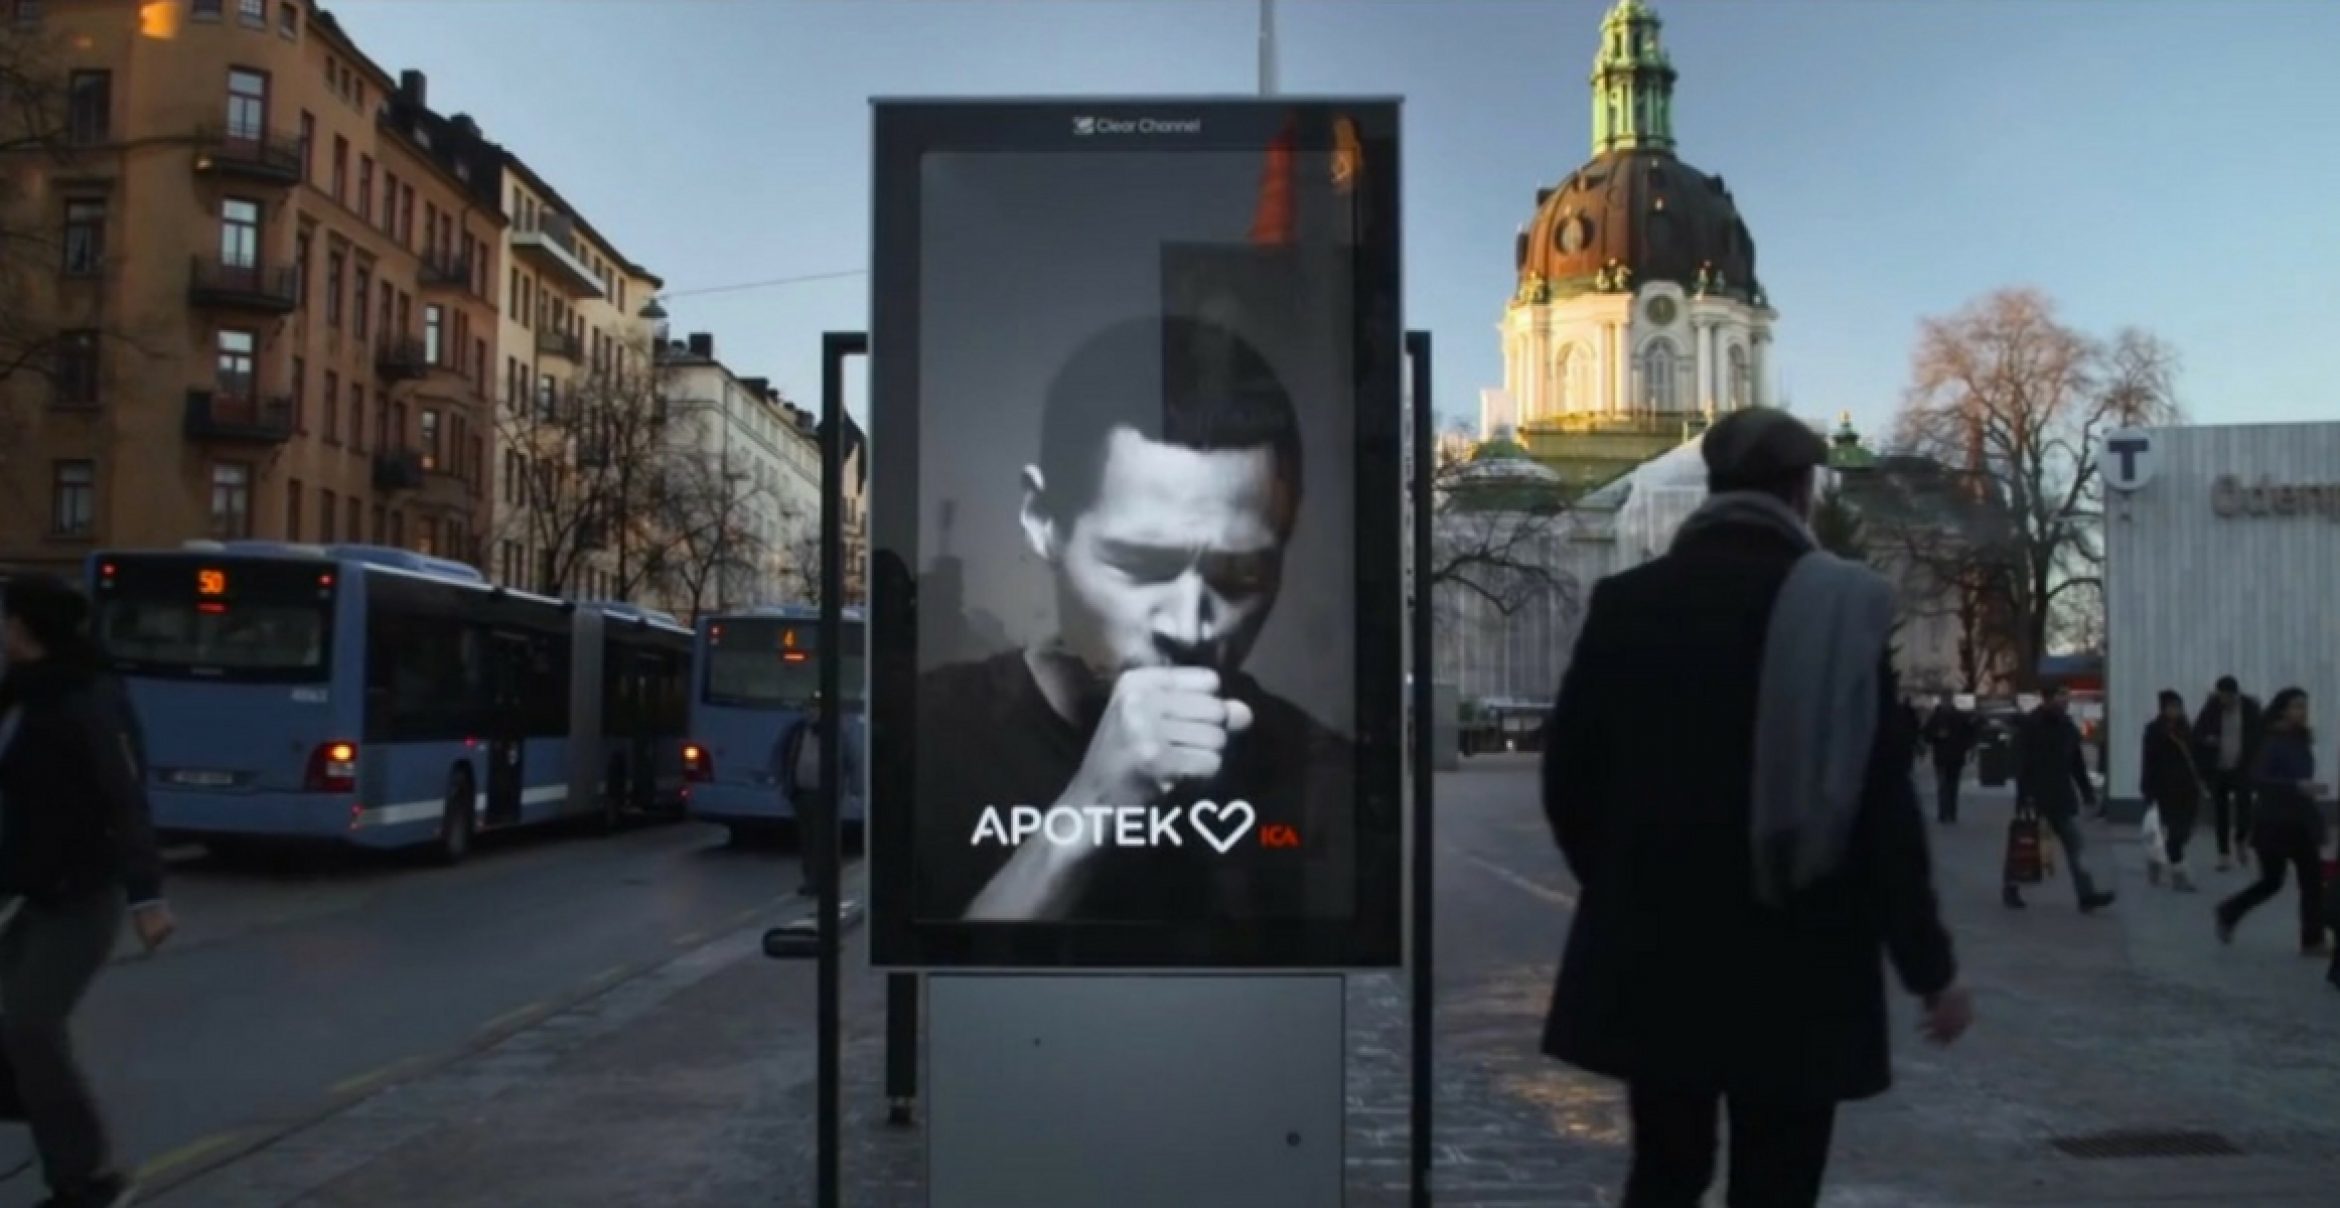 Guerilla: Schwedische Apotheke wirbt mit “hustender“ Werbung für Raucher